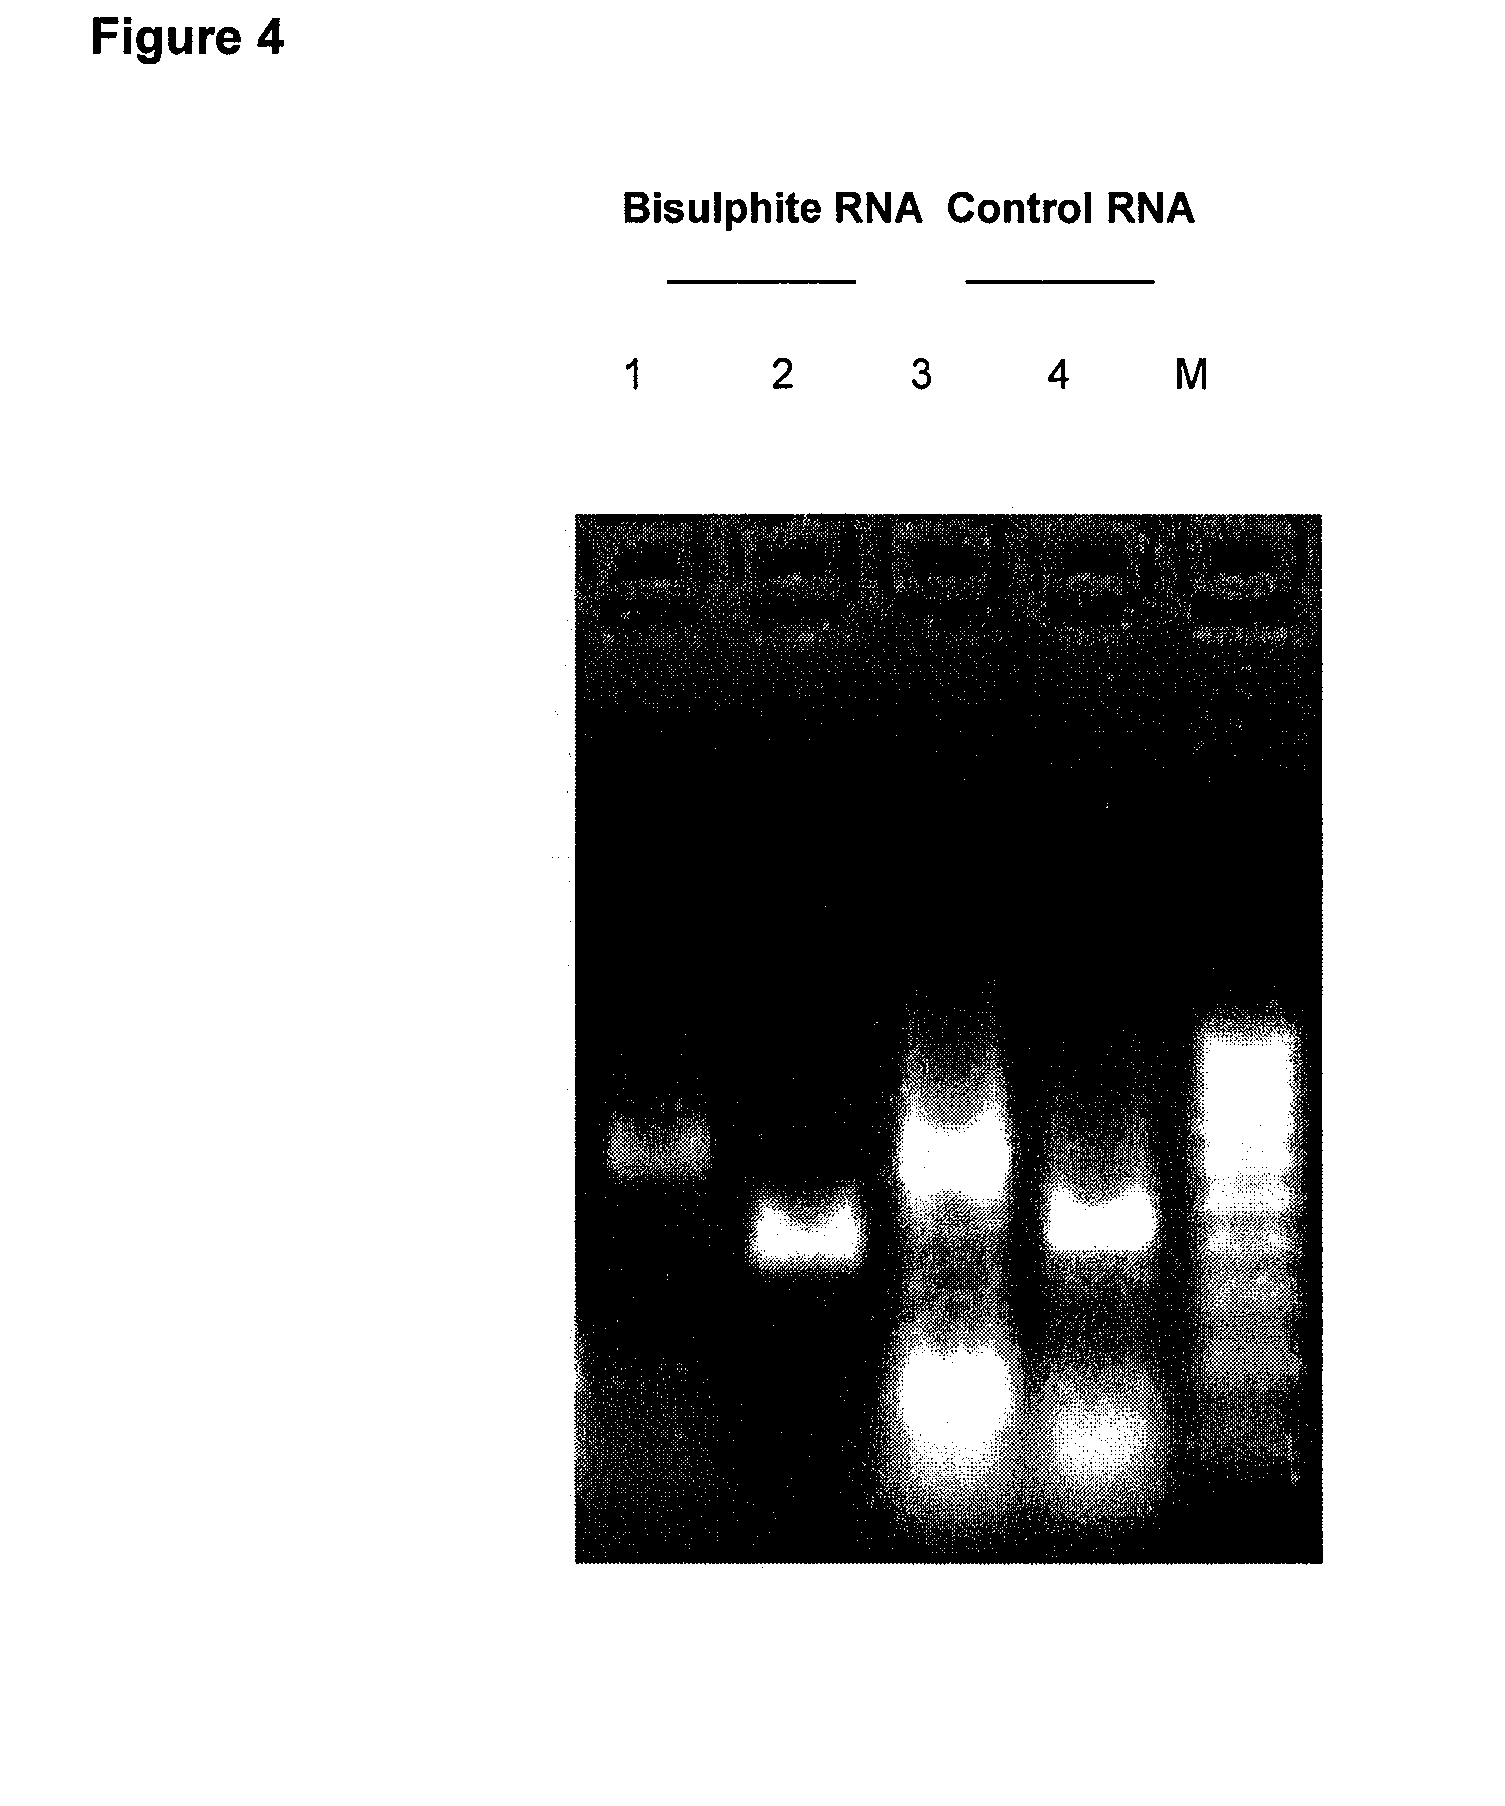 Bisulphite reagent treatment of nucleic acid